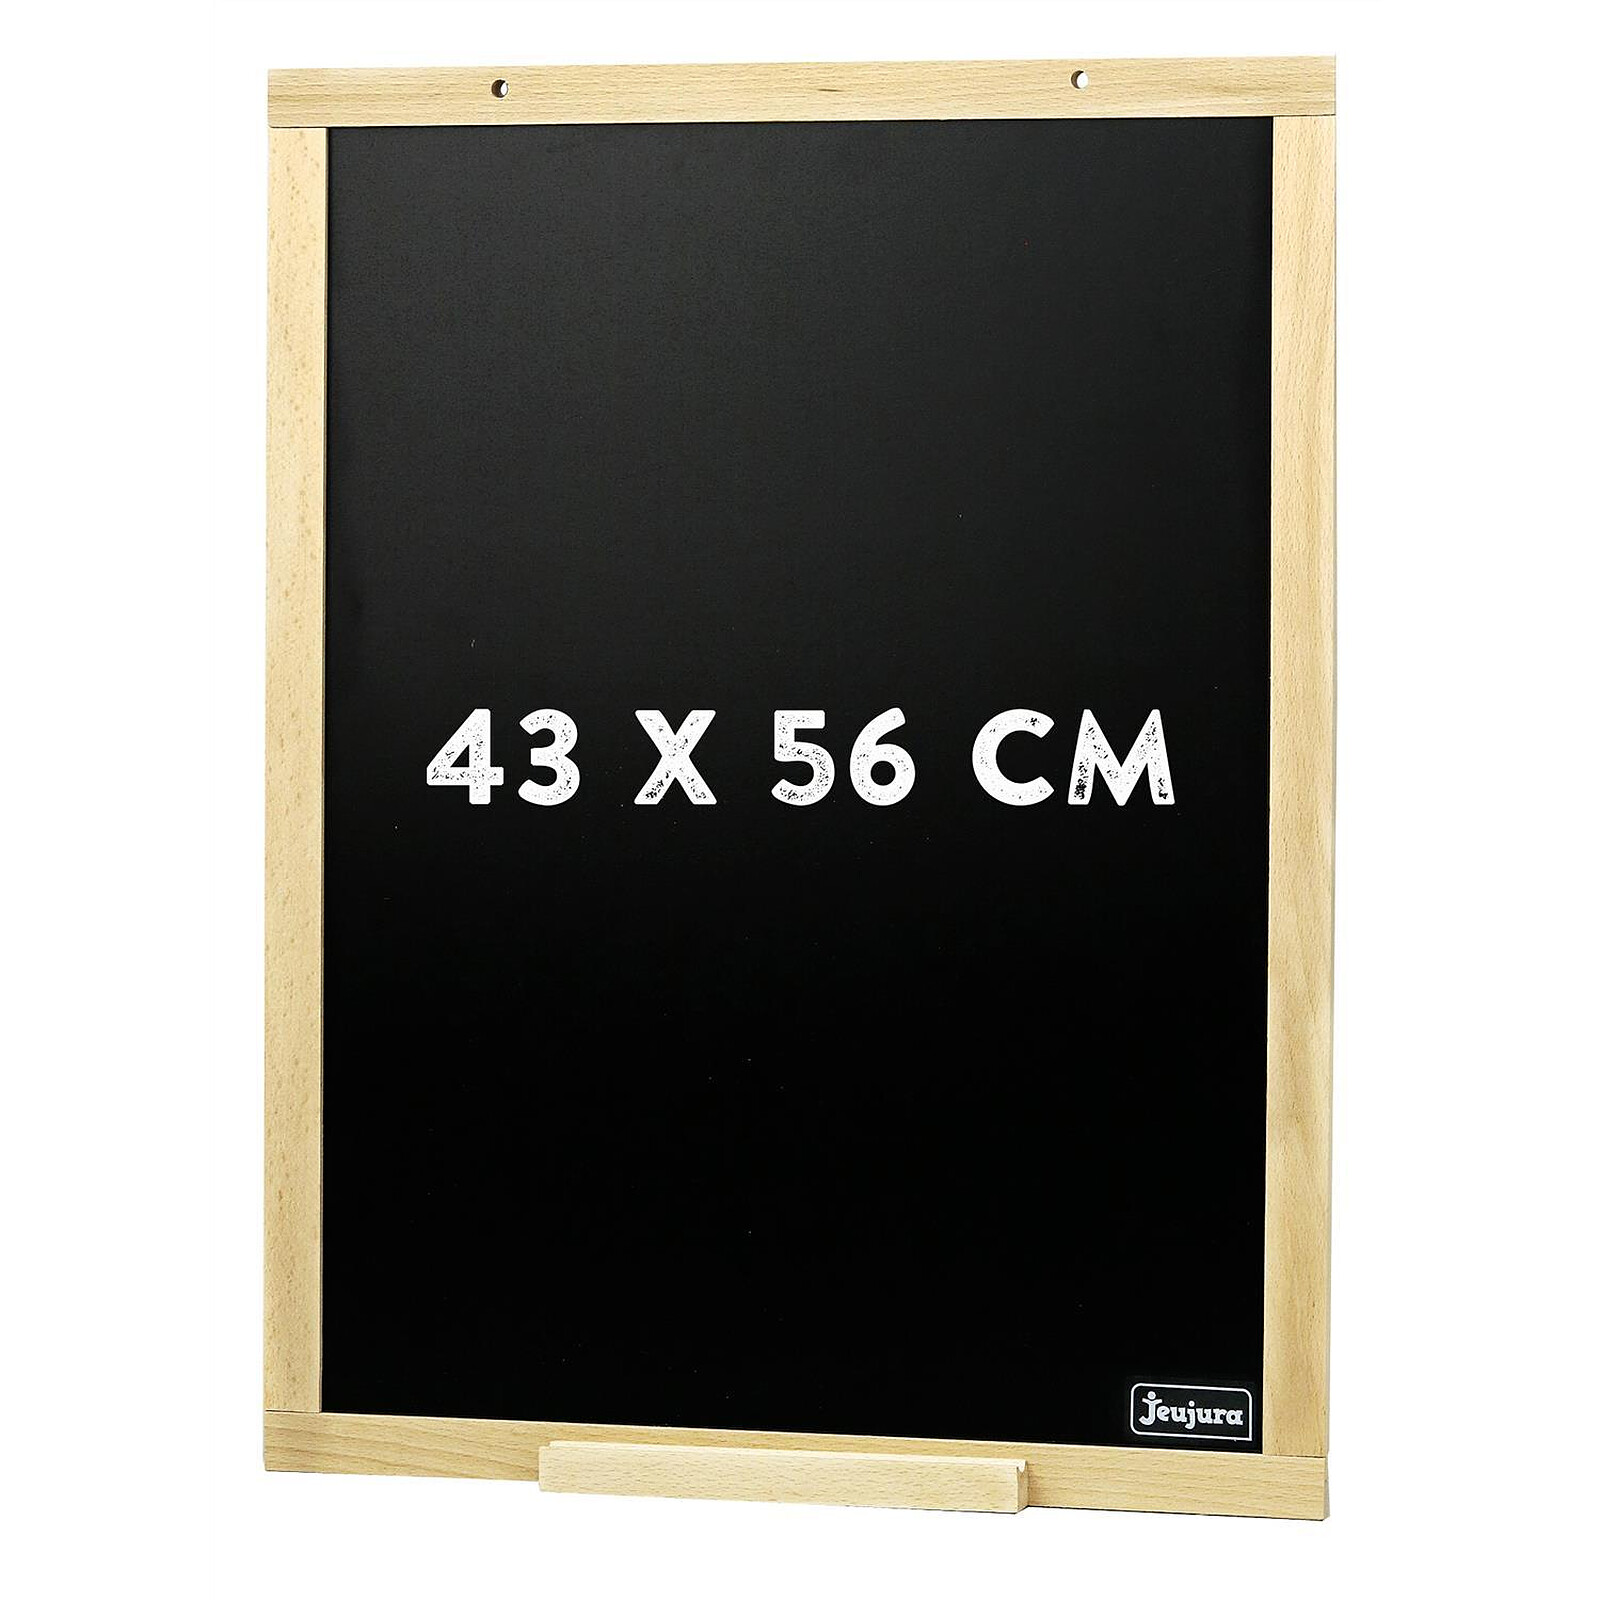 Grand tableau noir pour craie avec cadre en bois - 90 x 60 cm